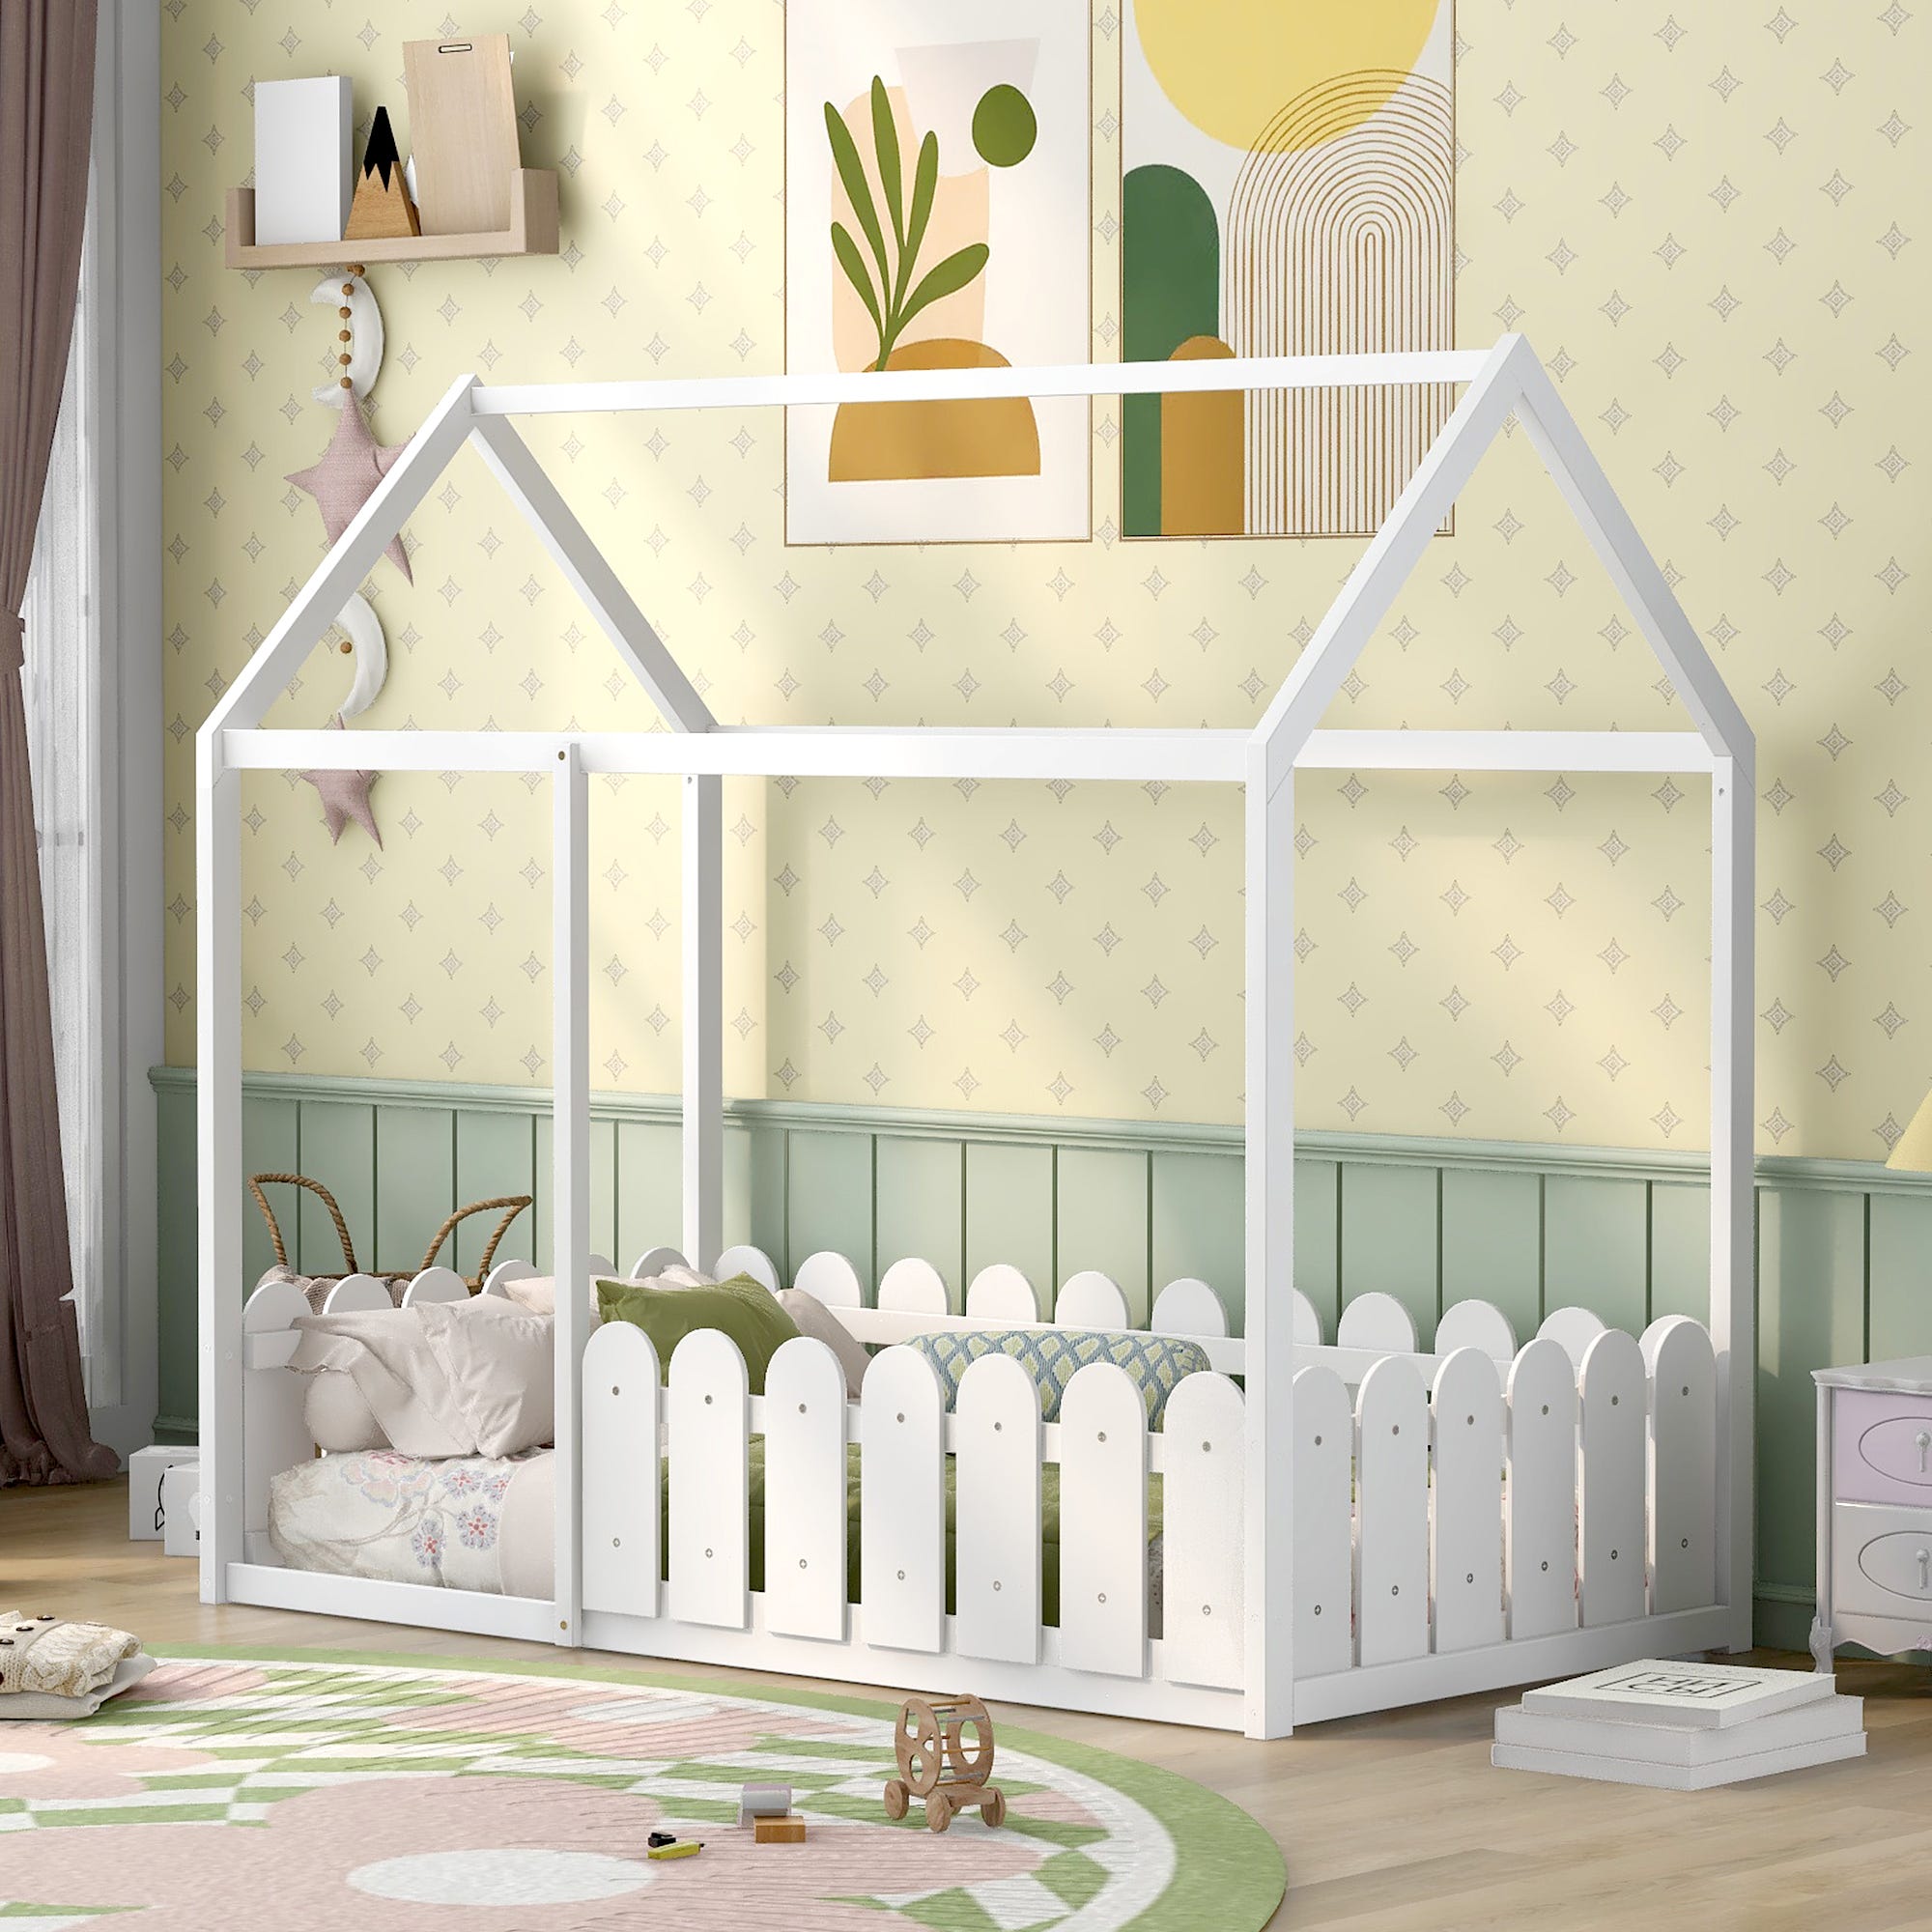 Habitación juvenil completa Child color roble y blanco cama 90x190